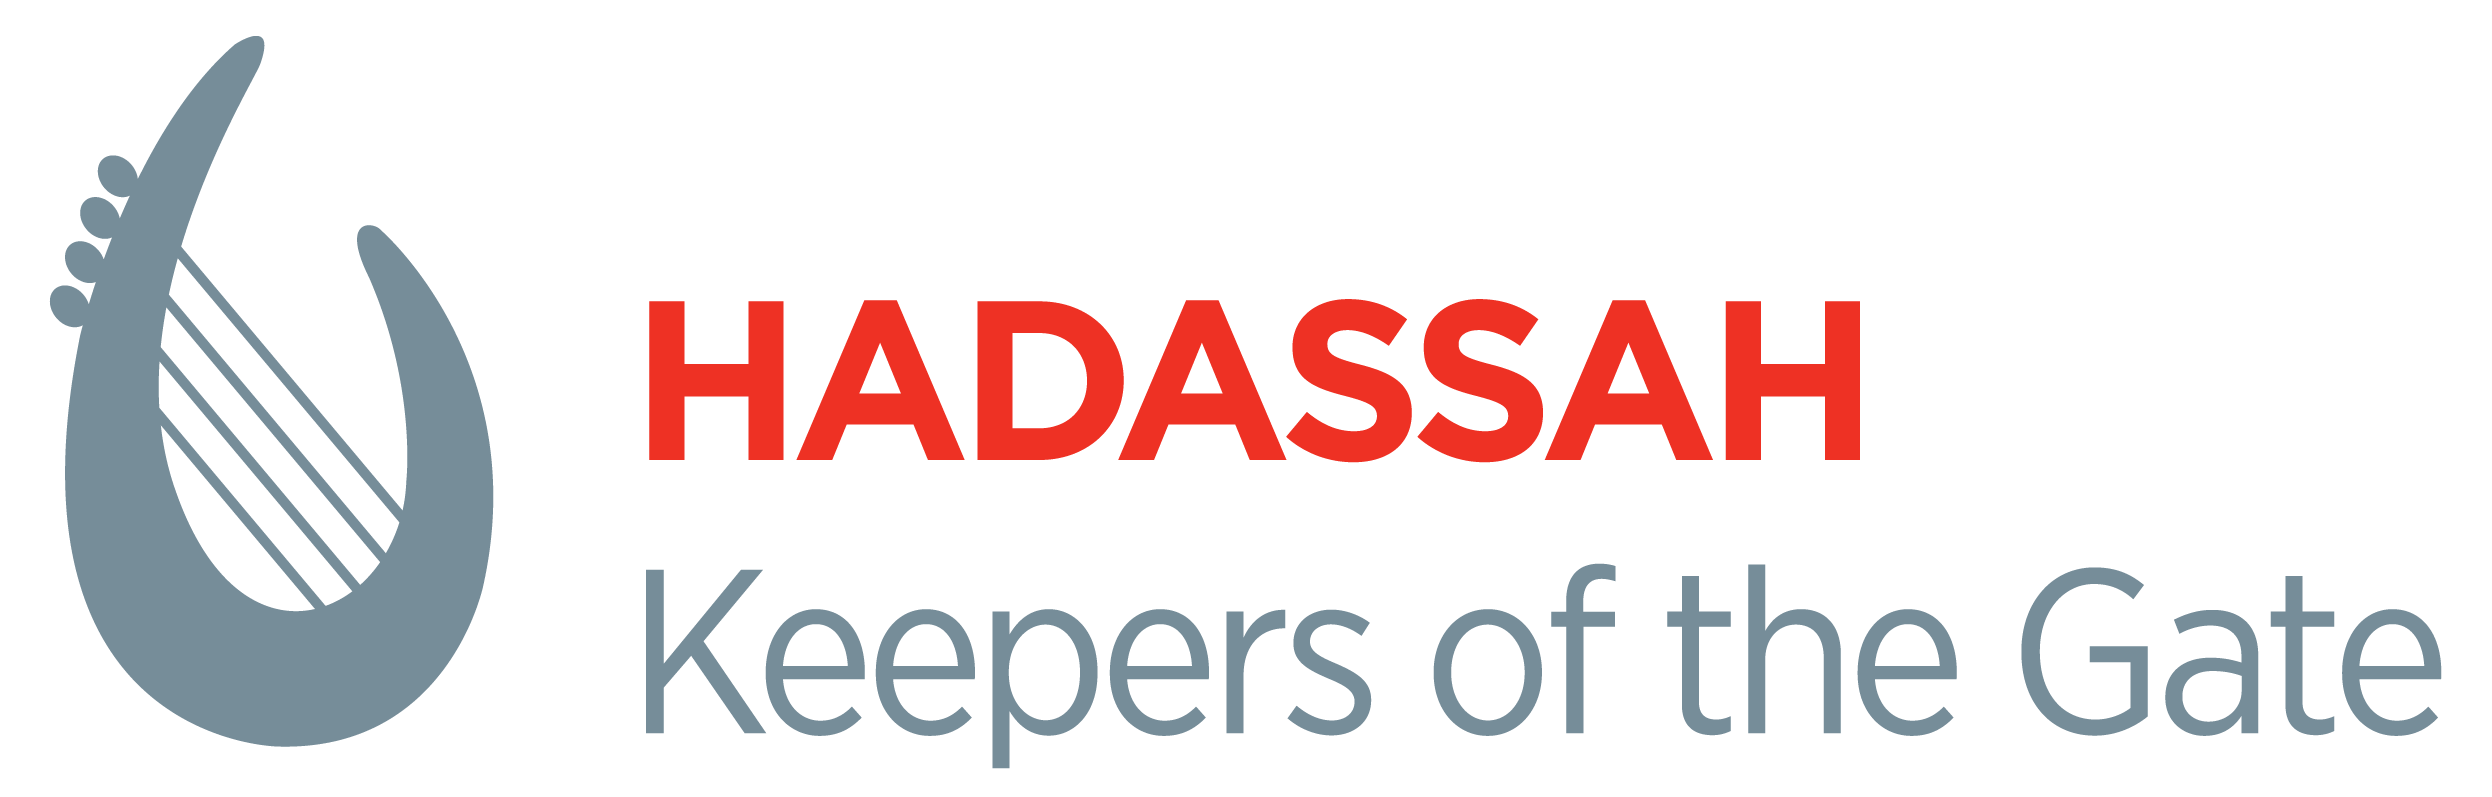 Hadassah Logo - Hadassah Greater Miami | Hadassah, The Women's Zionist Org of America